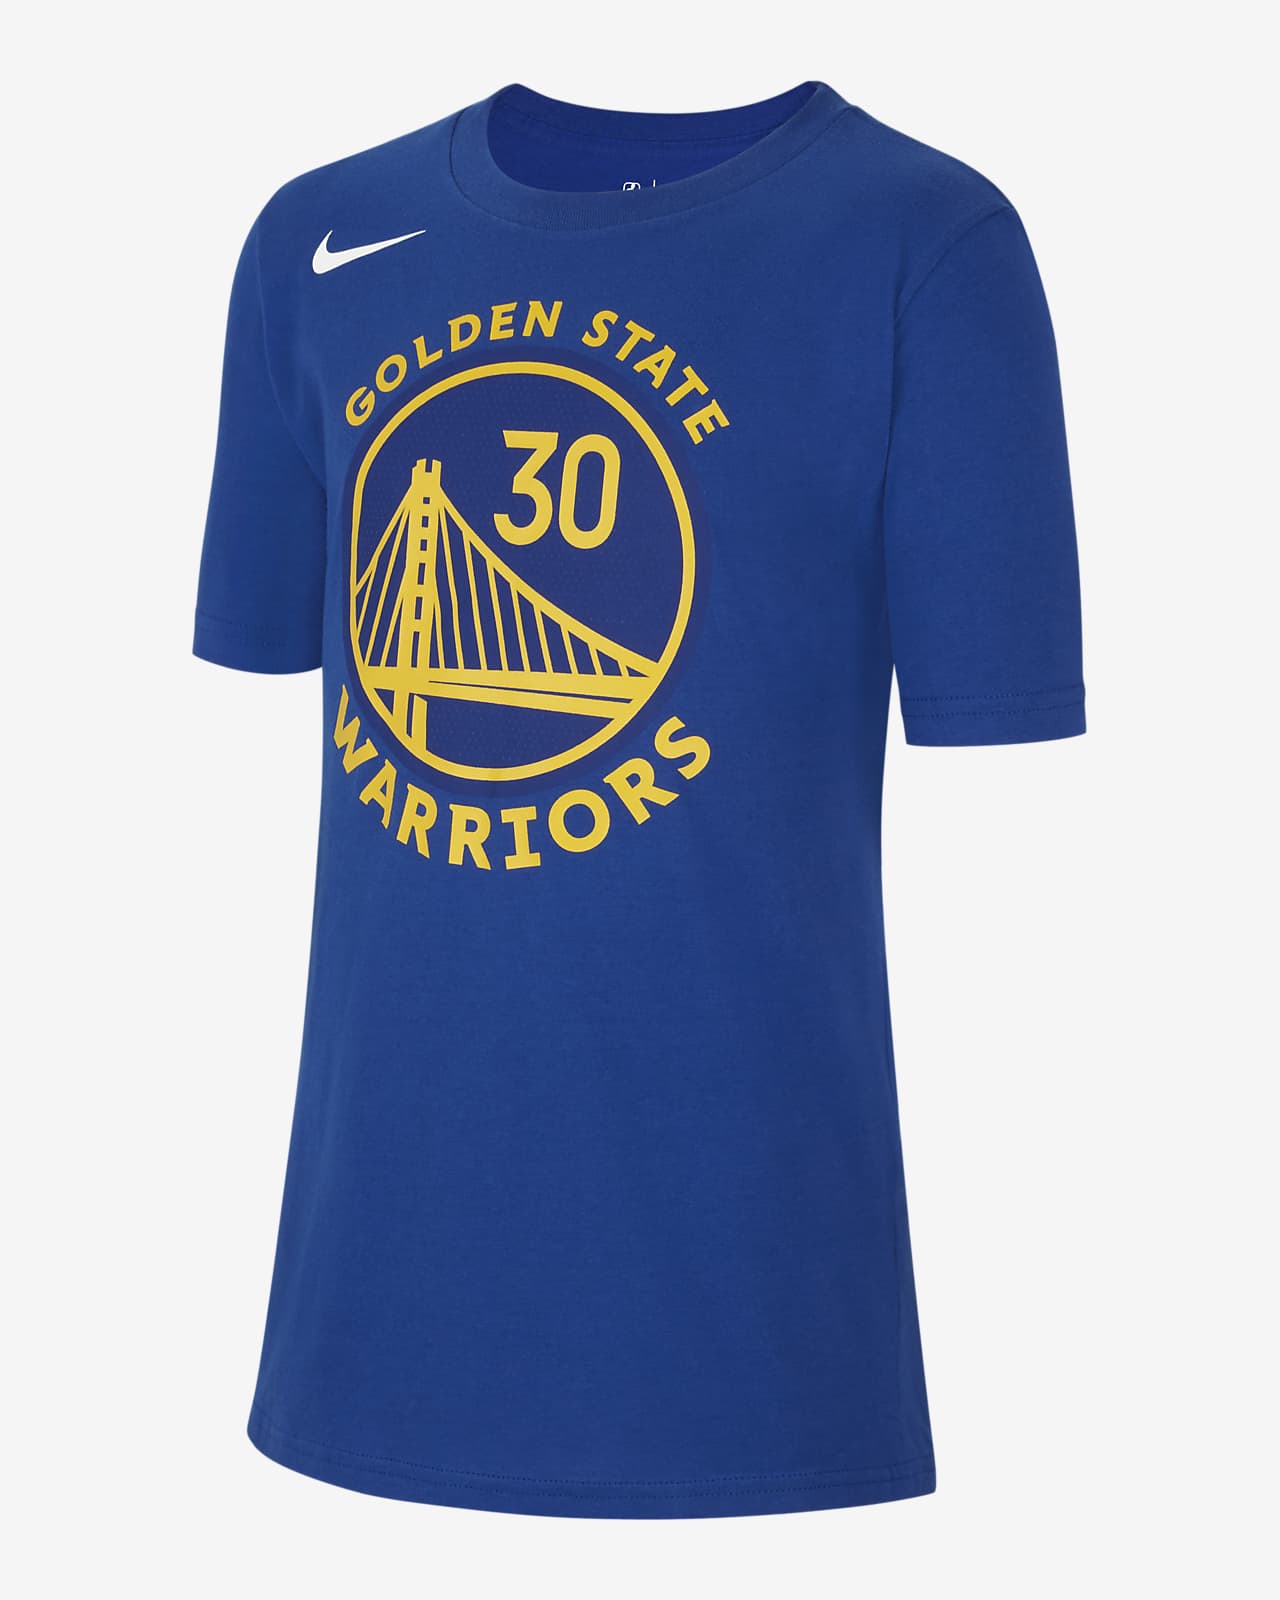 Golden State Warriors Nike NBA-shirt voor kids